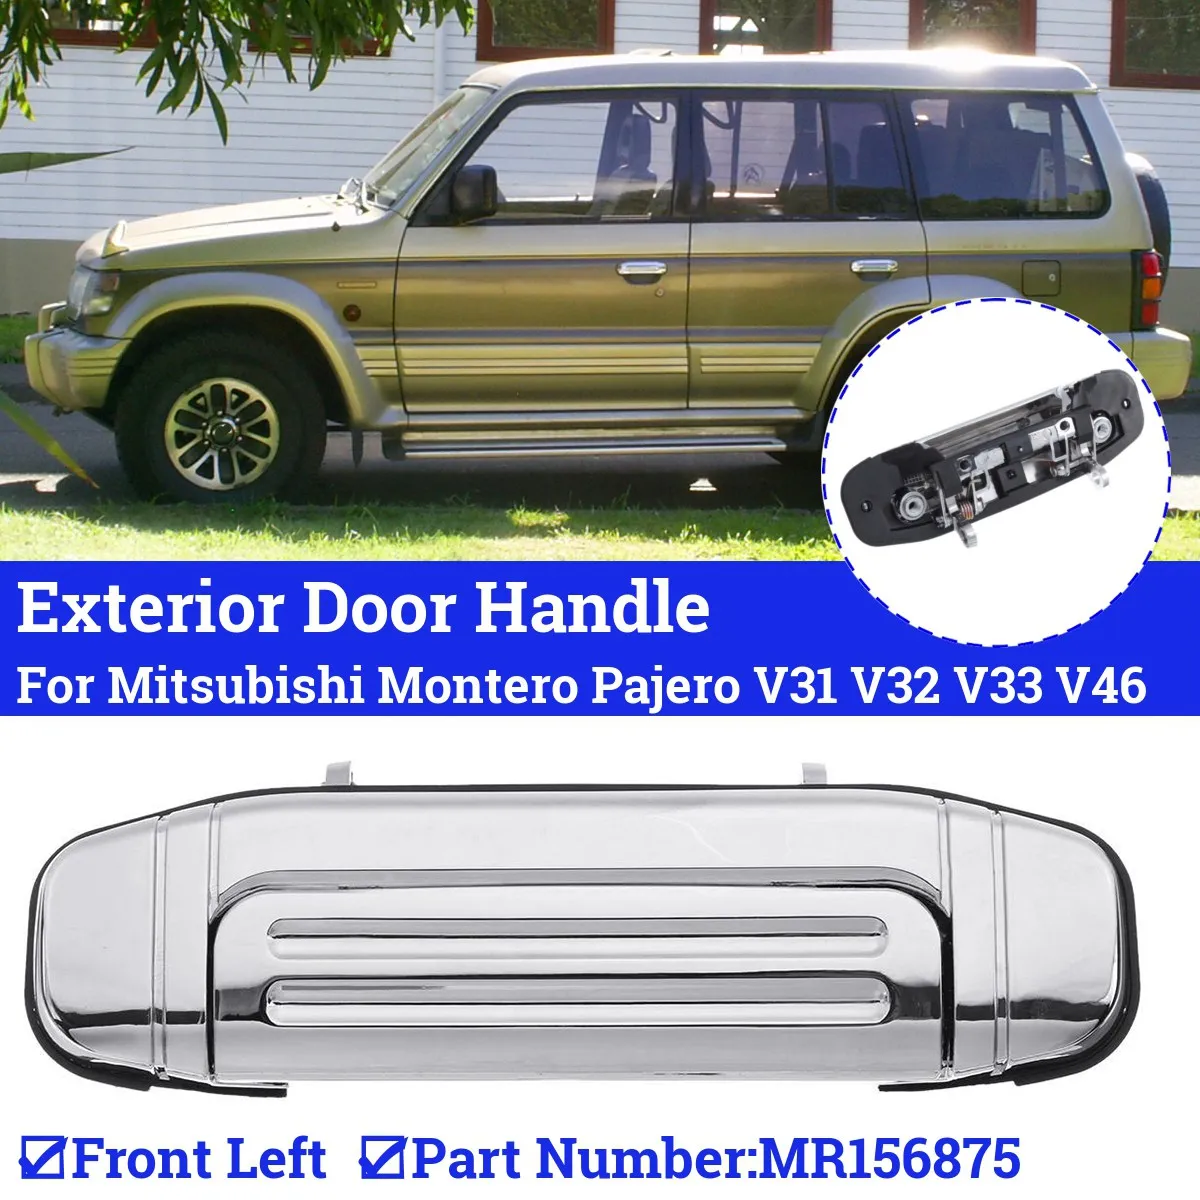 Покрытие Передней Пары Наружных Дверных Ручек Mitsubishi Montero Pajero V46 V31 V32 V33 V43 V45 V46 MR156876 MR156875